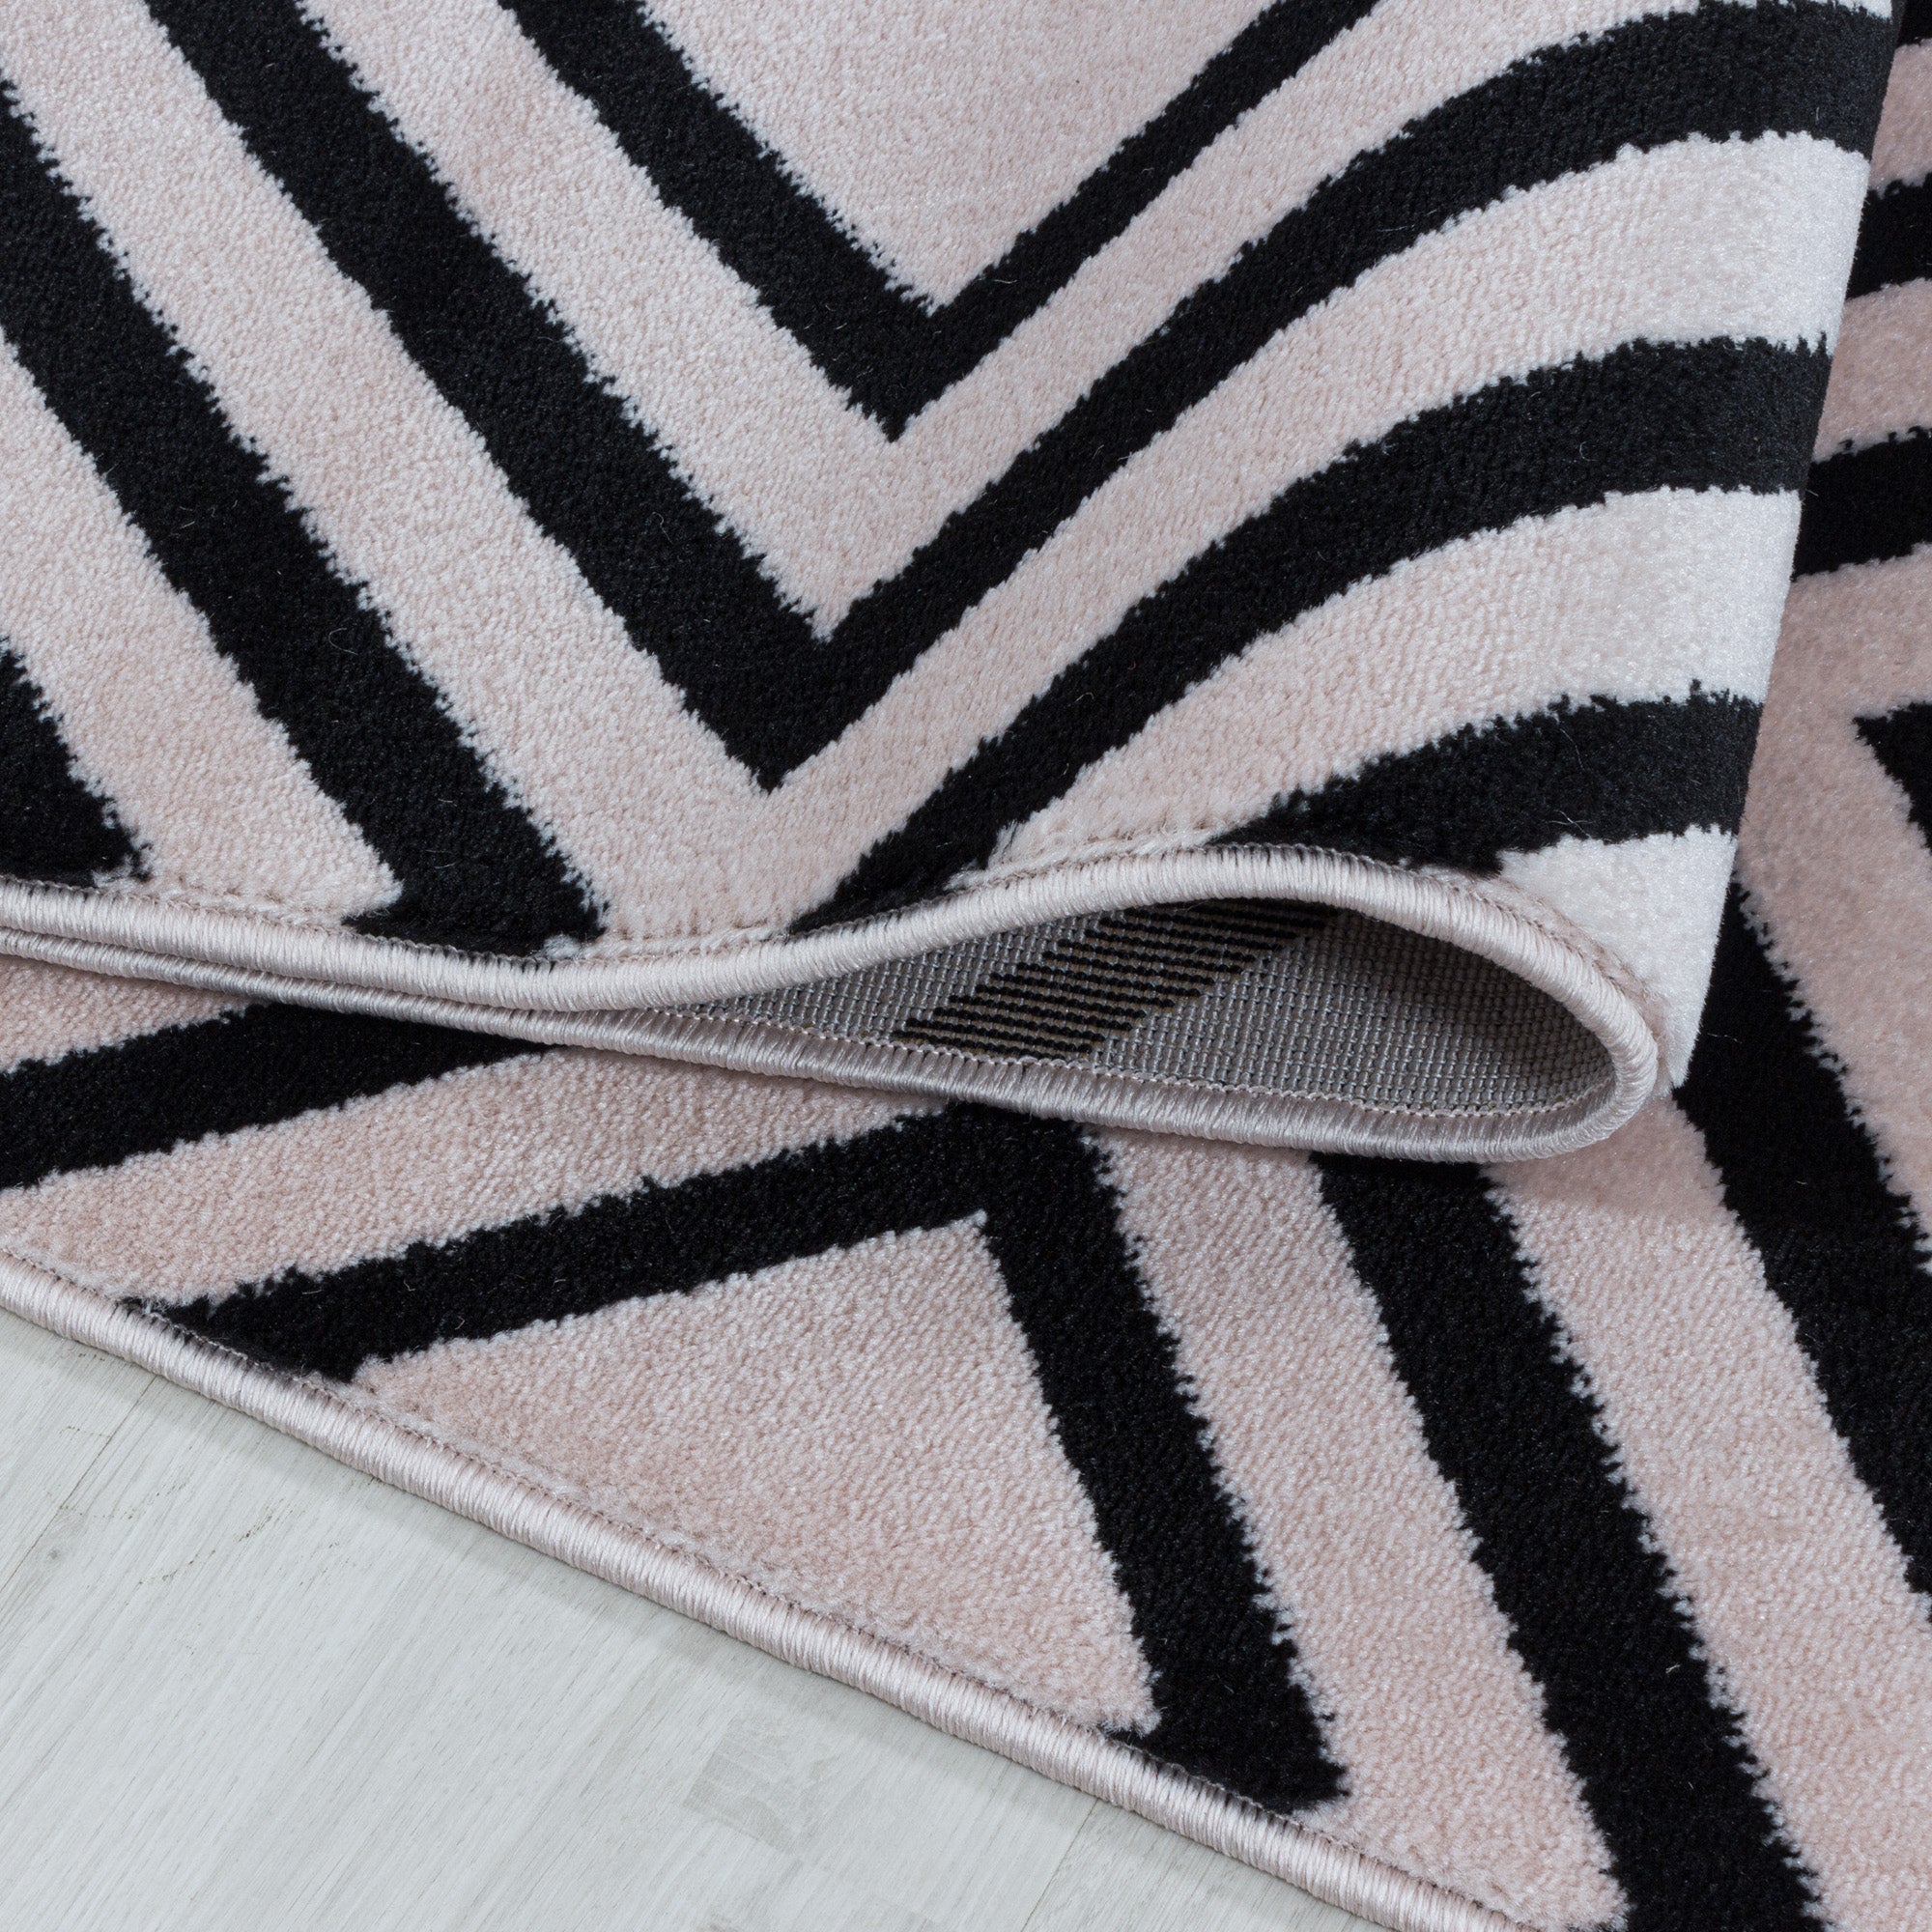 Weicher Kurzflor Teppich Wohnzimmerteppich Rauten Gitter Design Soft Flor Pink